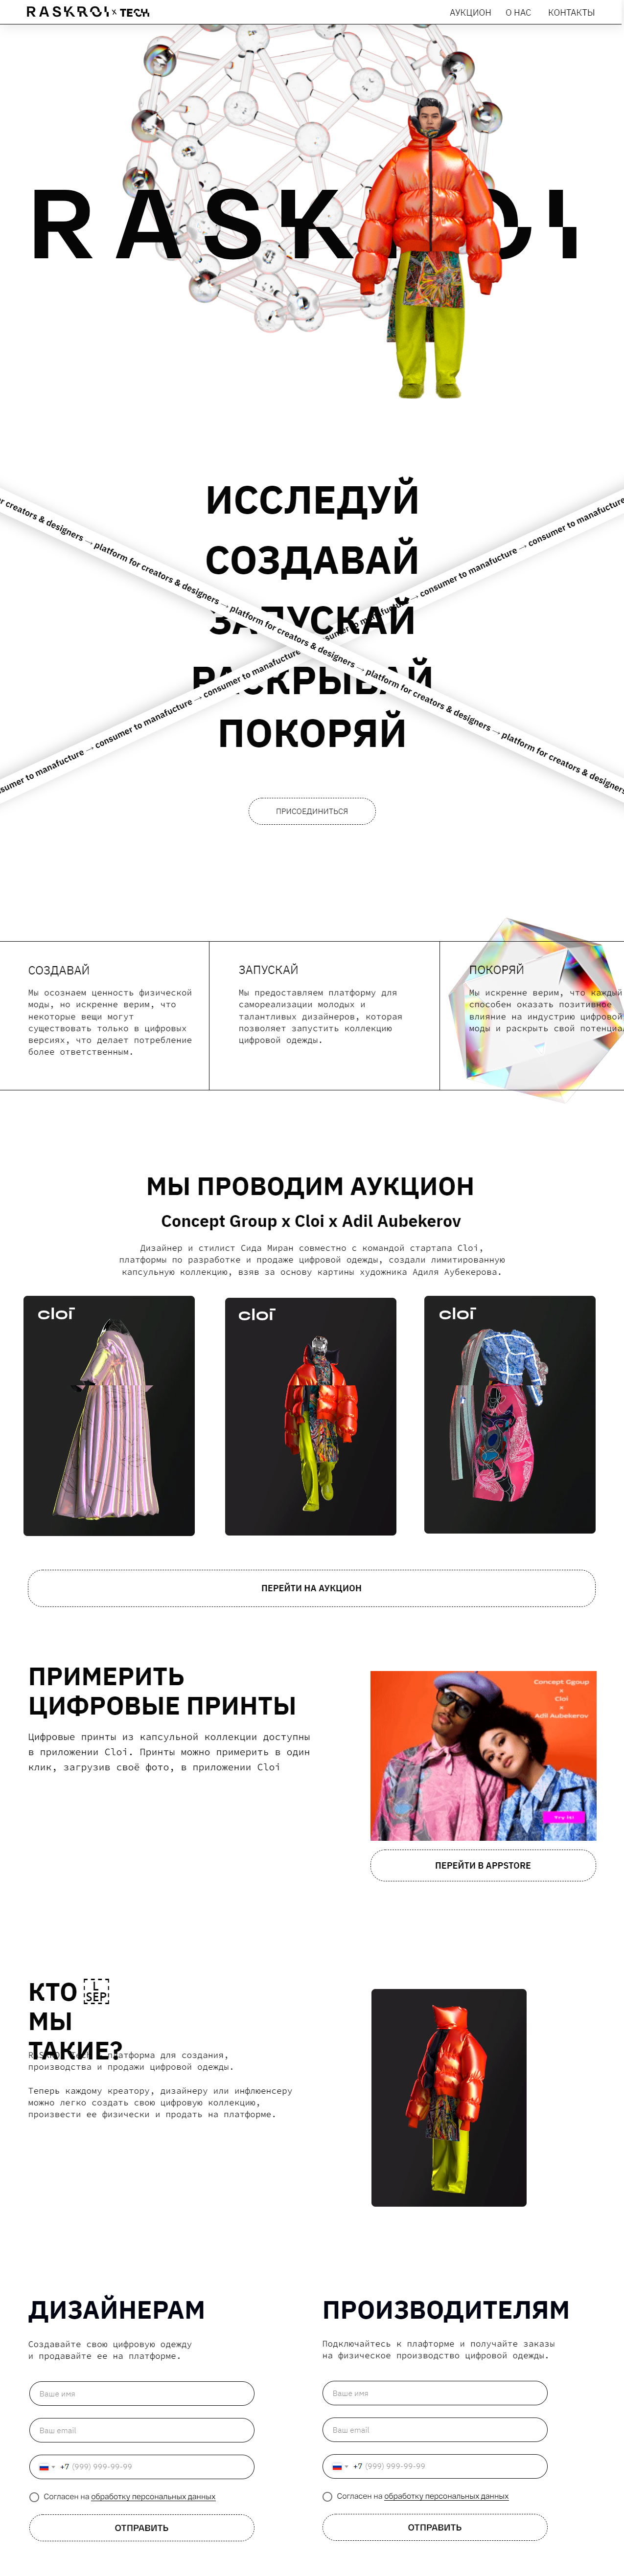 Сайт проекта создания цифровой одежды